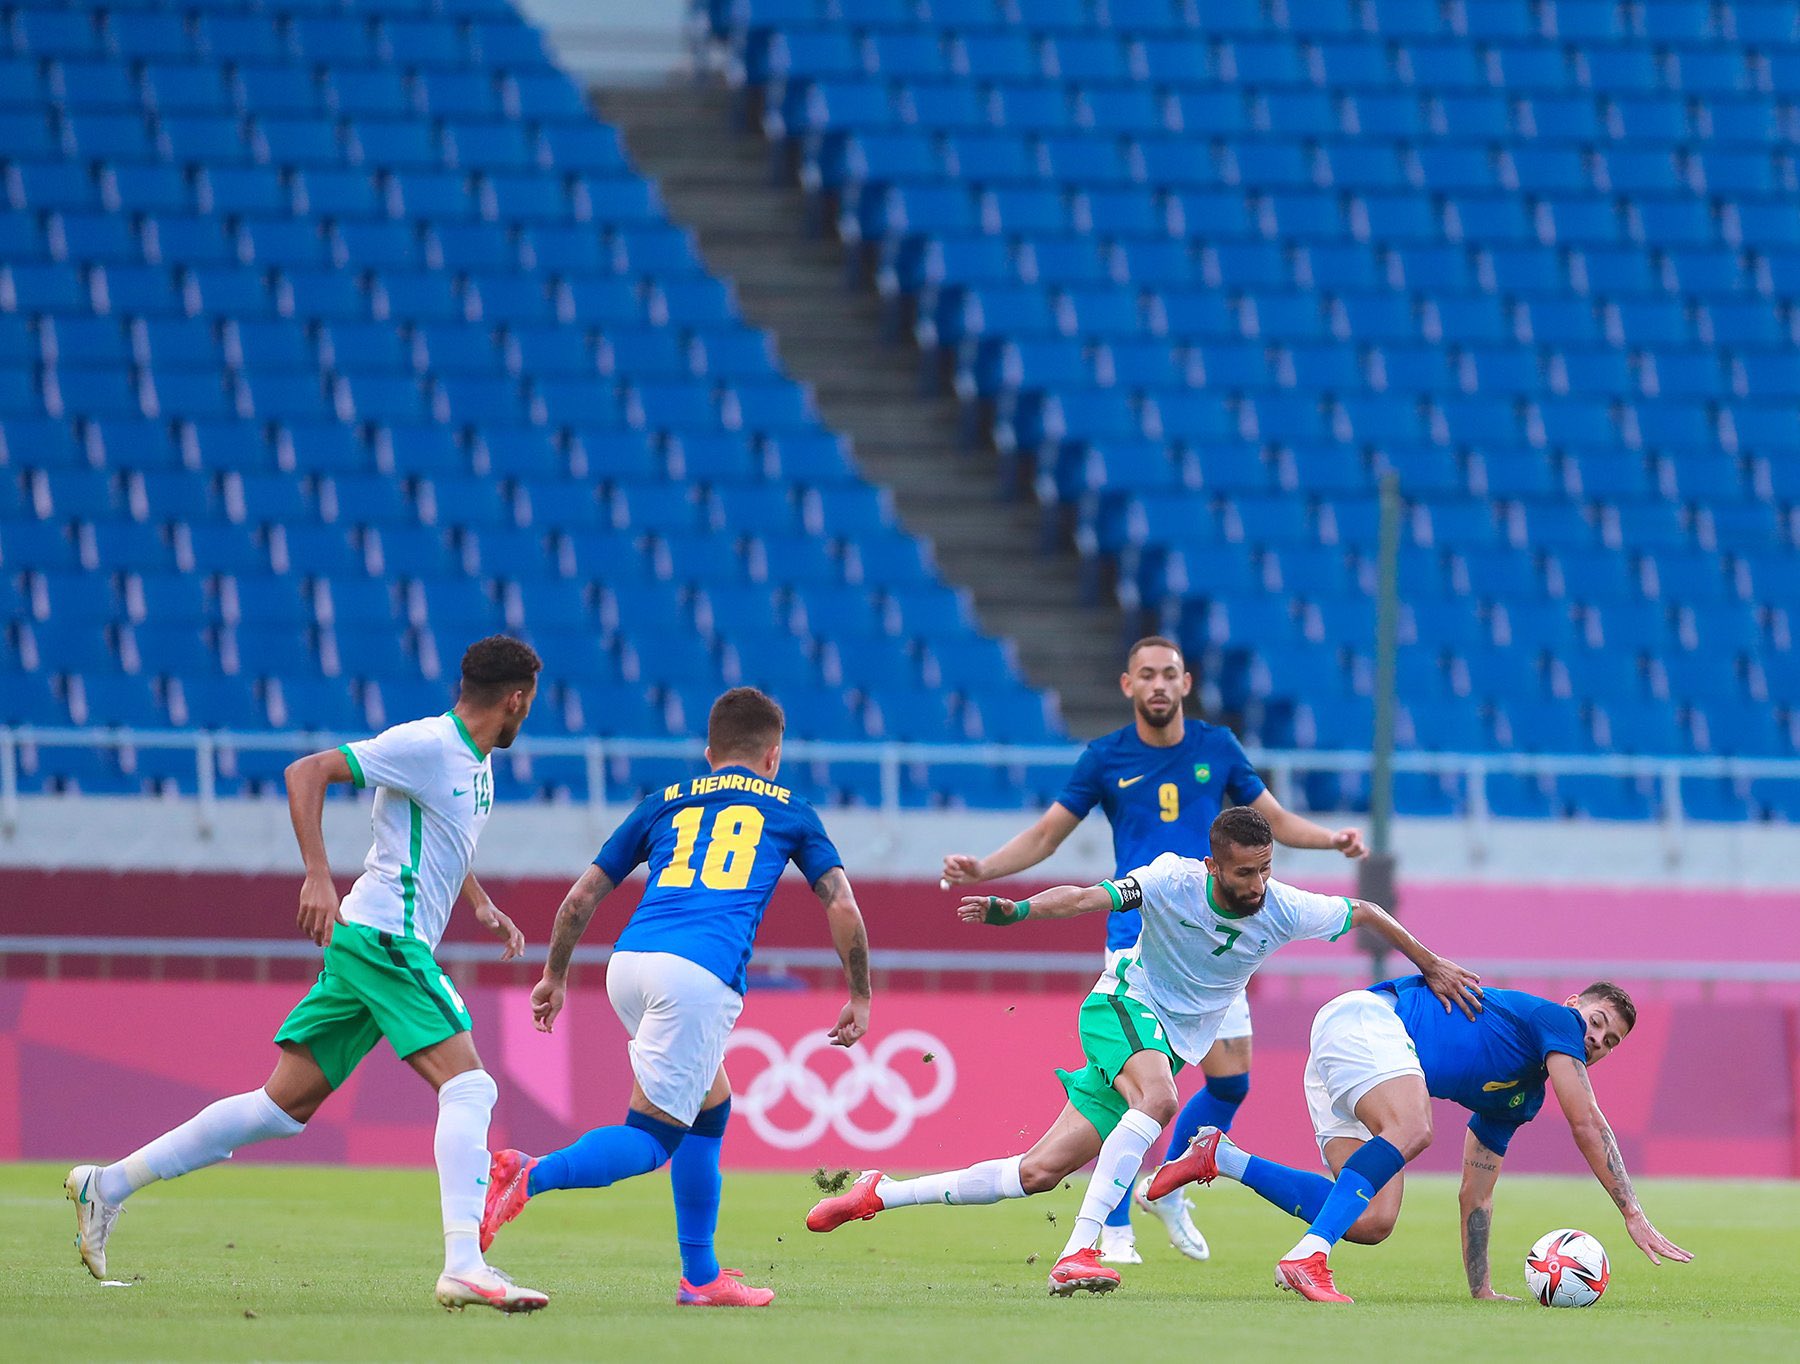 صحيفة عكاظ | المنتخب السعودي الأولمبي يخسر مباراته أمام منتخب البرازيل ب 3 أهداف لهدف.